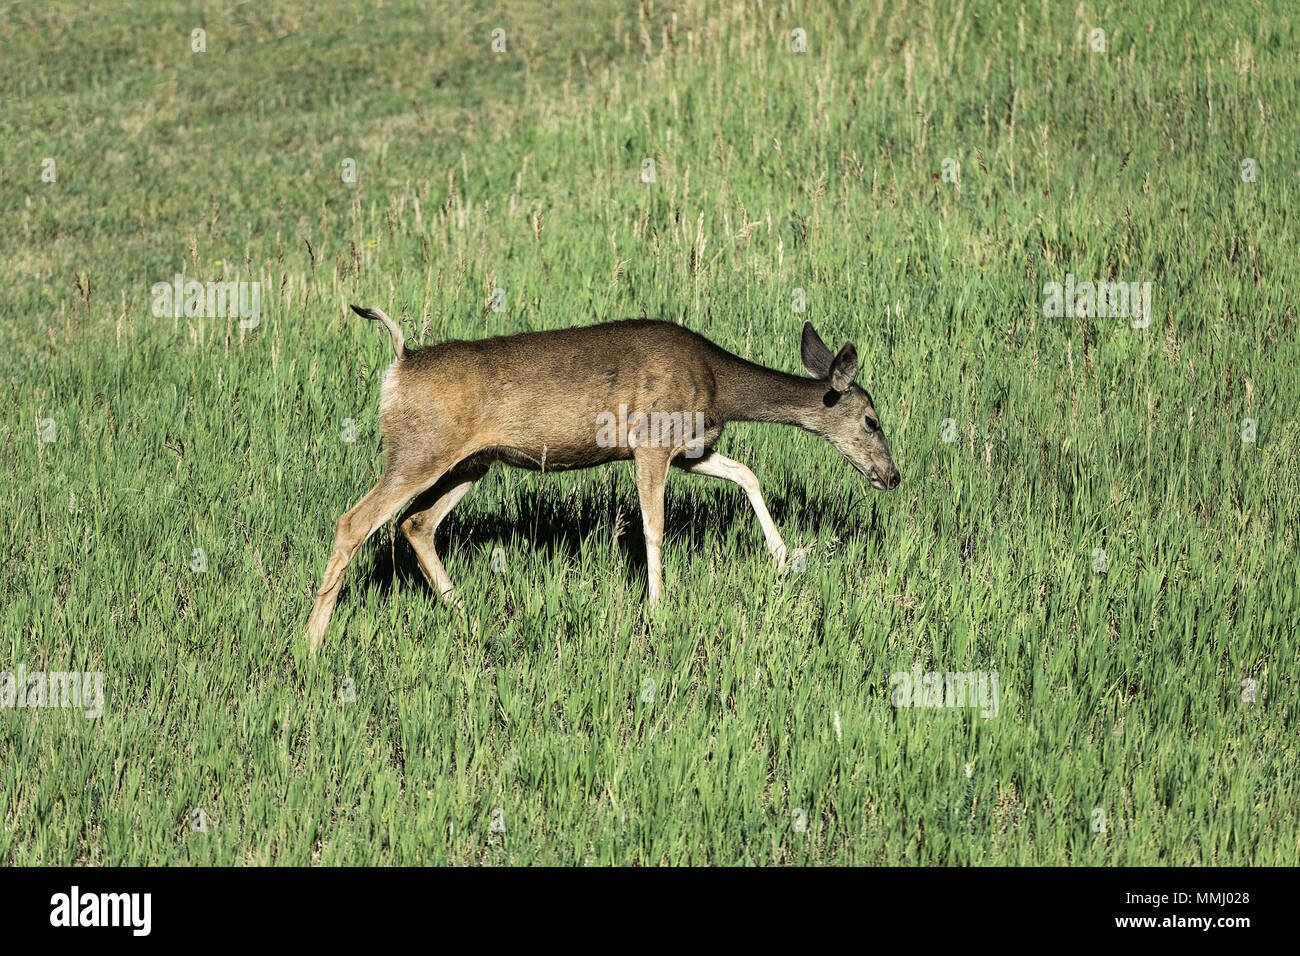 Lone deer rovistando per cibo, Golden, Colorado, STATI UNITI D'AMERICA Foto Stock